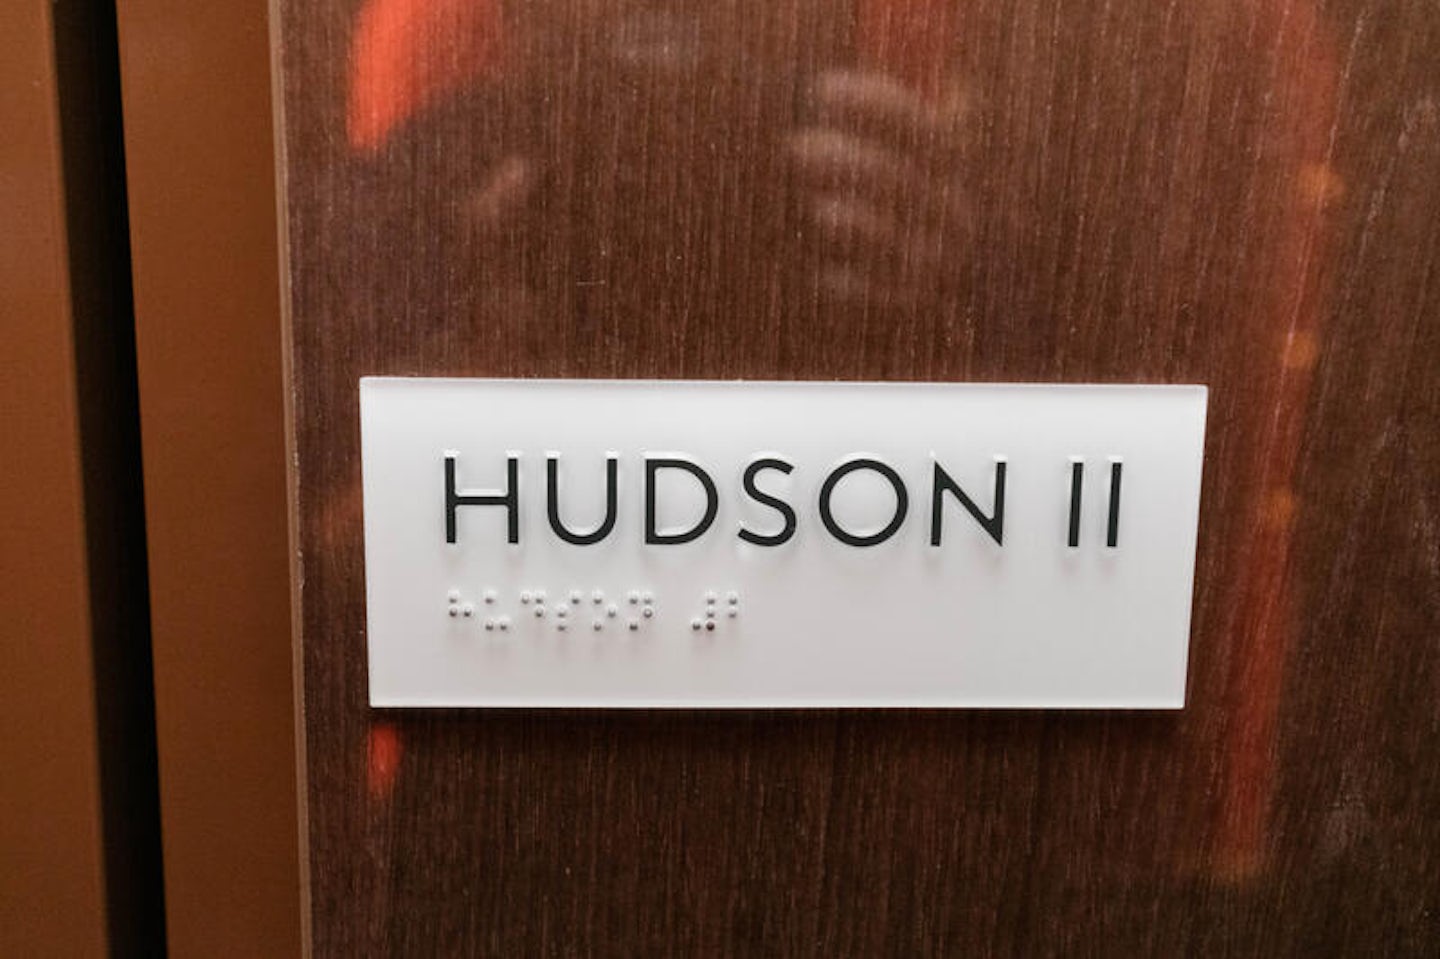 Hudson II on Koningsdam